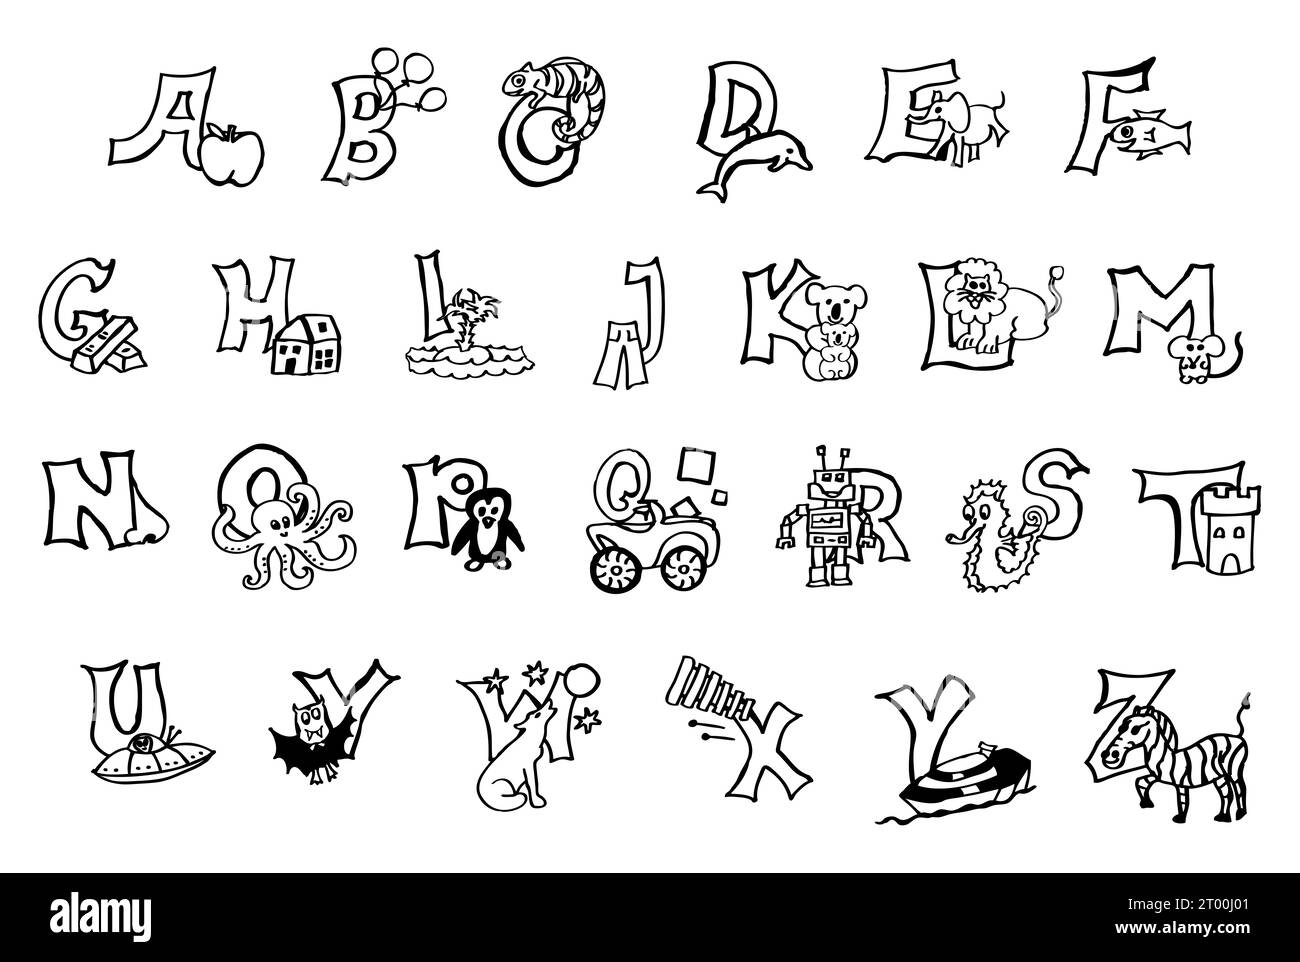 Alfabeto colorido pintado a mano con animales, aprender letras abc, escribir, leer trabajos en alemán y en inglés: Apple comienza con A en ambos idiomas Foto de stock